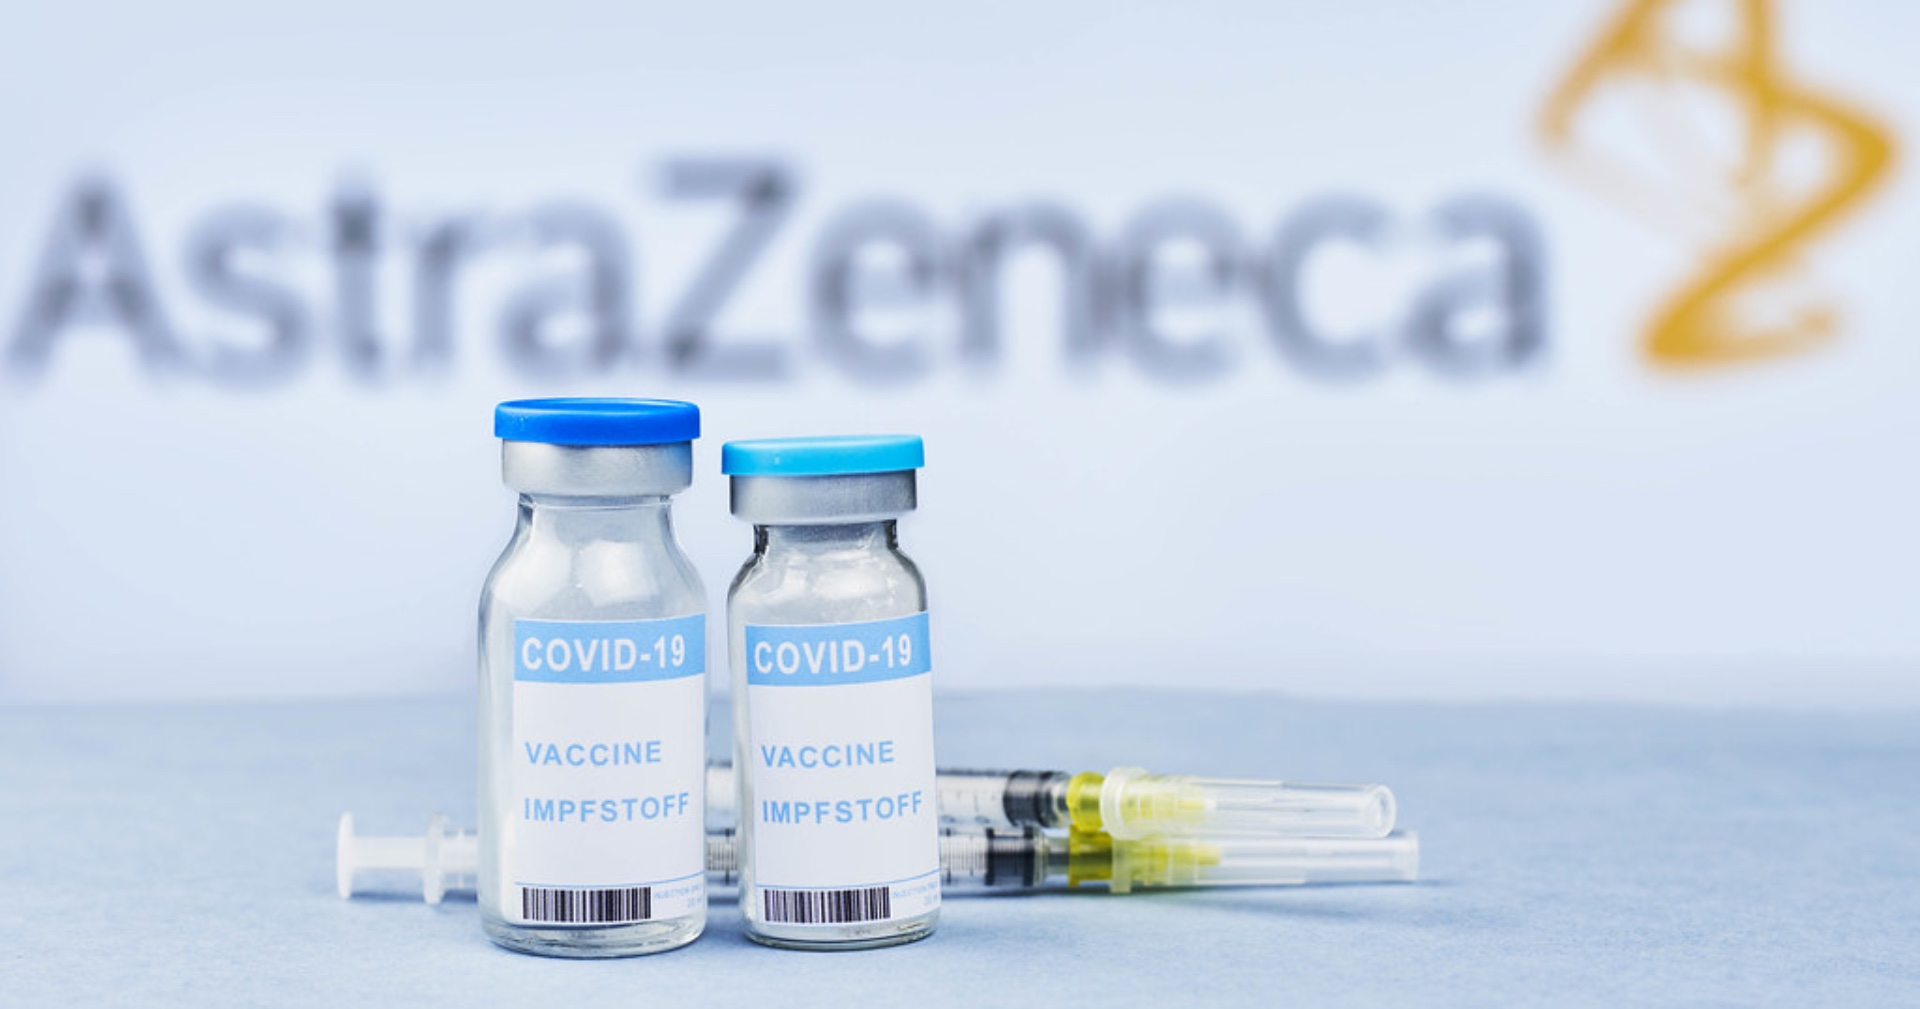 เผยผลทดสอบวัคซีน AstraZeneca พบมีประสิทธิภาพสูง